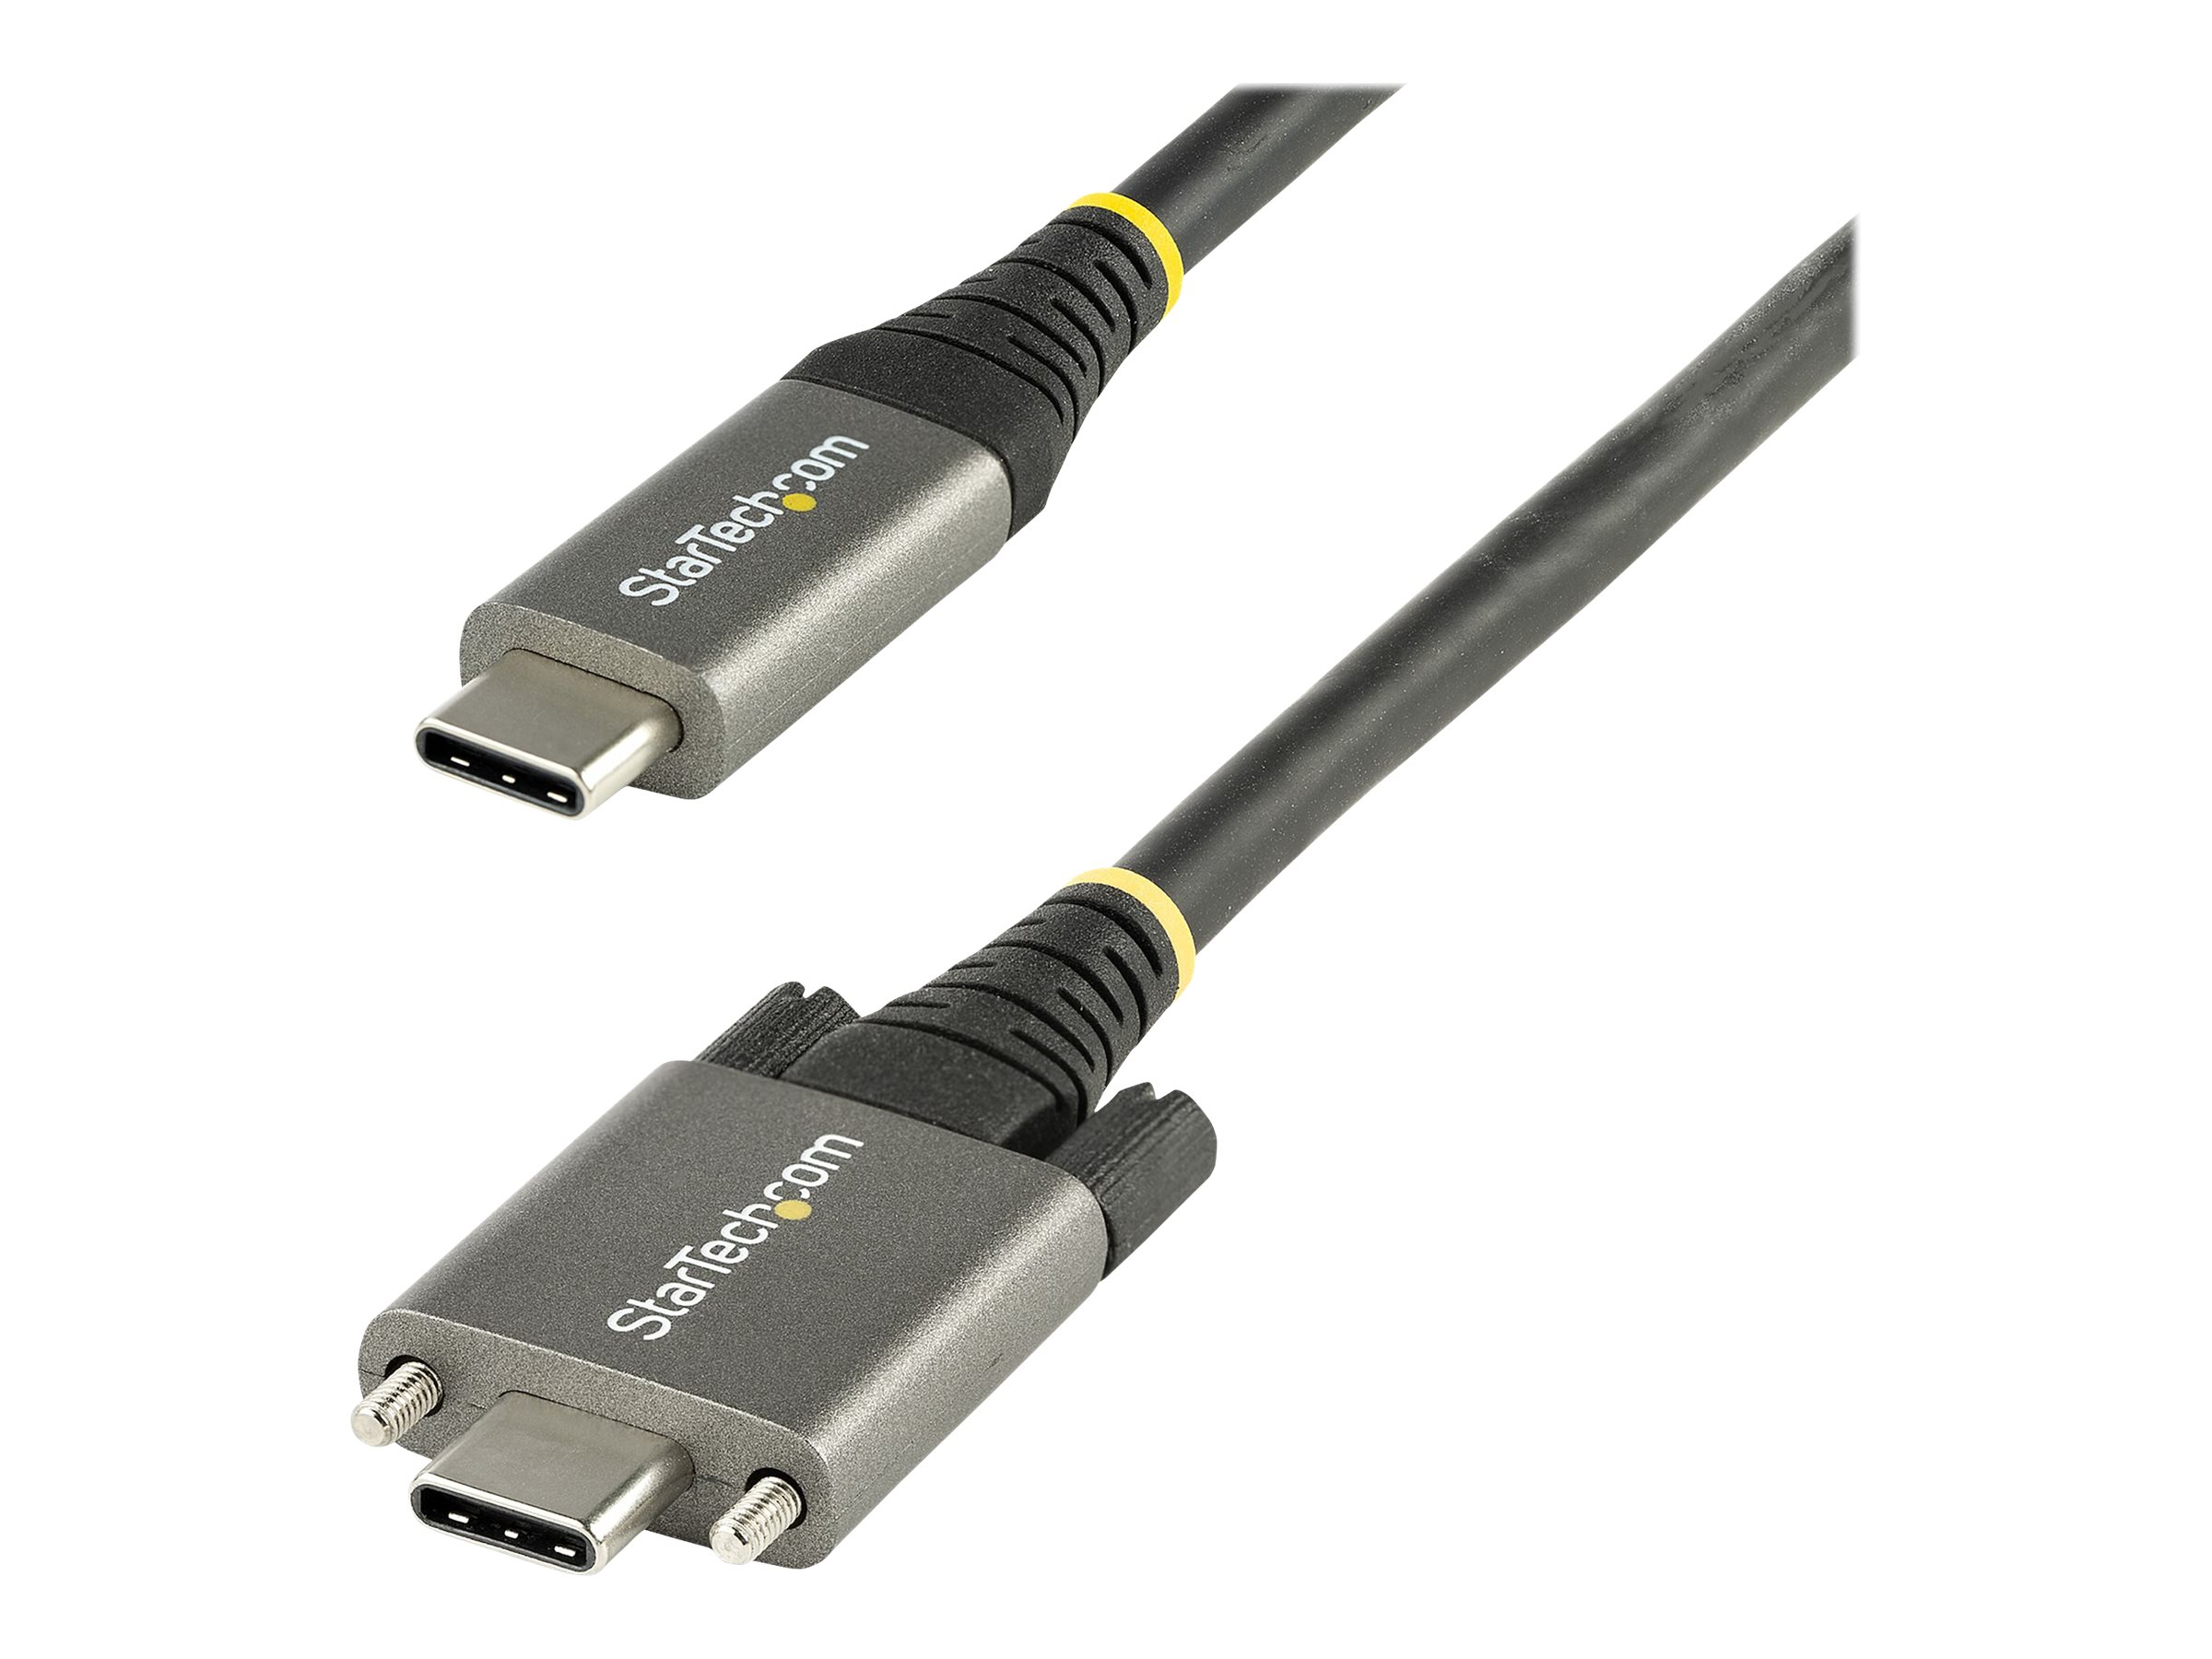 StarTech.com 50cm USB-C Kabel mit Schraubensicherung 10Gbit/s - USB 3.1/3.2 Gen 2 Typ-C Kabel - 100W (5A) Power Delivery Laden, DP Alt Modus - USB-C Kabel zum Laden/Synchronisieren (USB31CCSLKV50CM) - USB-Kabel - 24 pin USB-C (M) gerade/verriegelnd z...